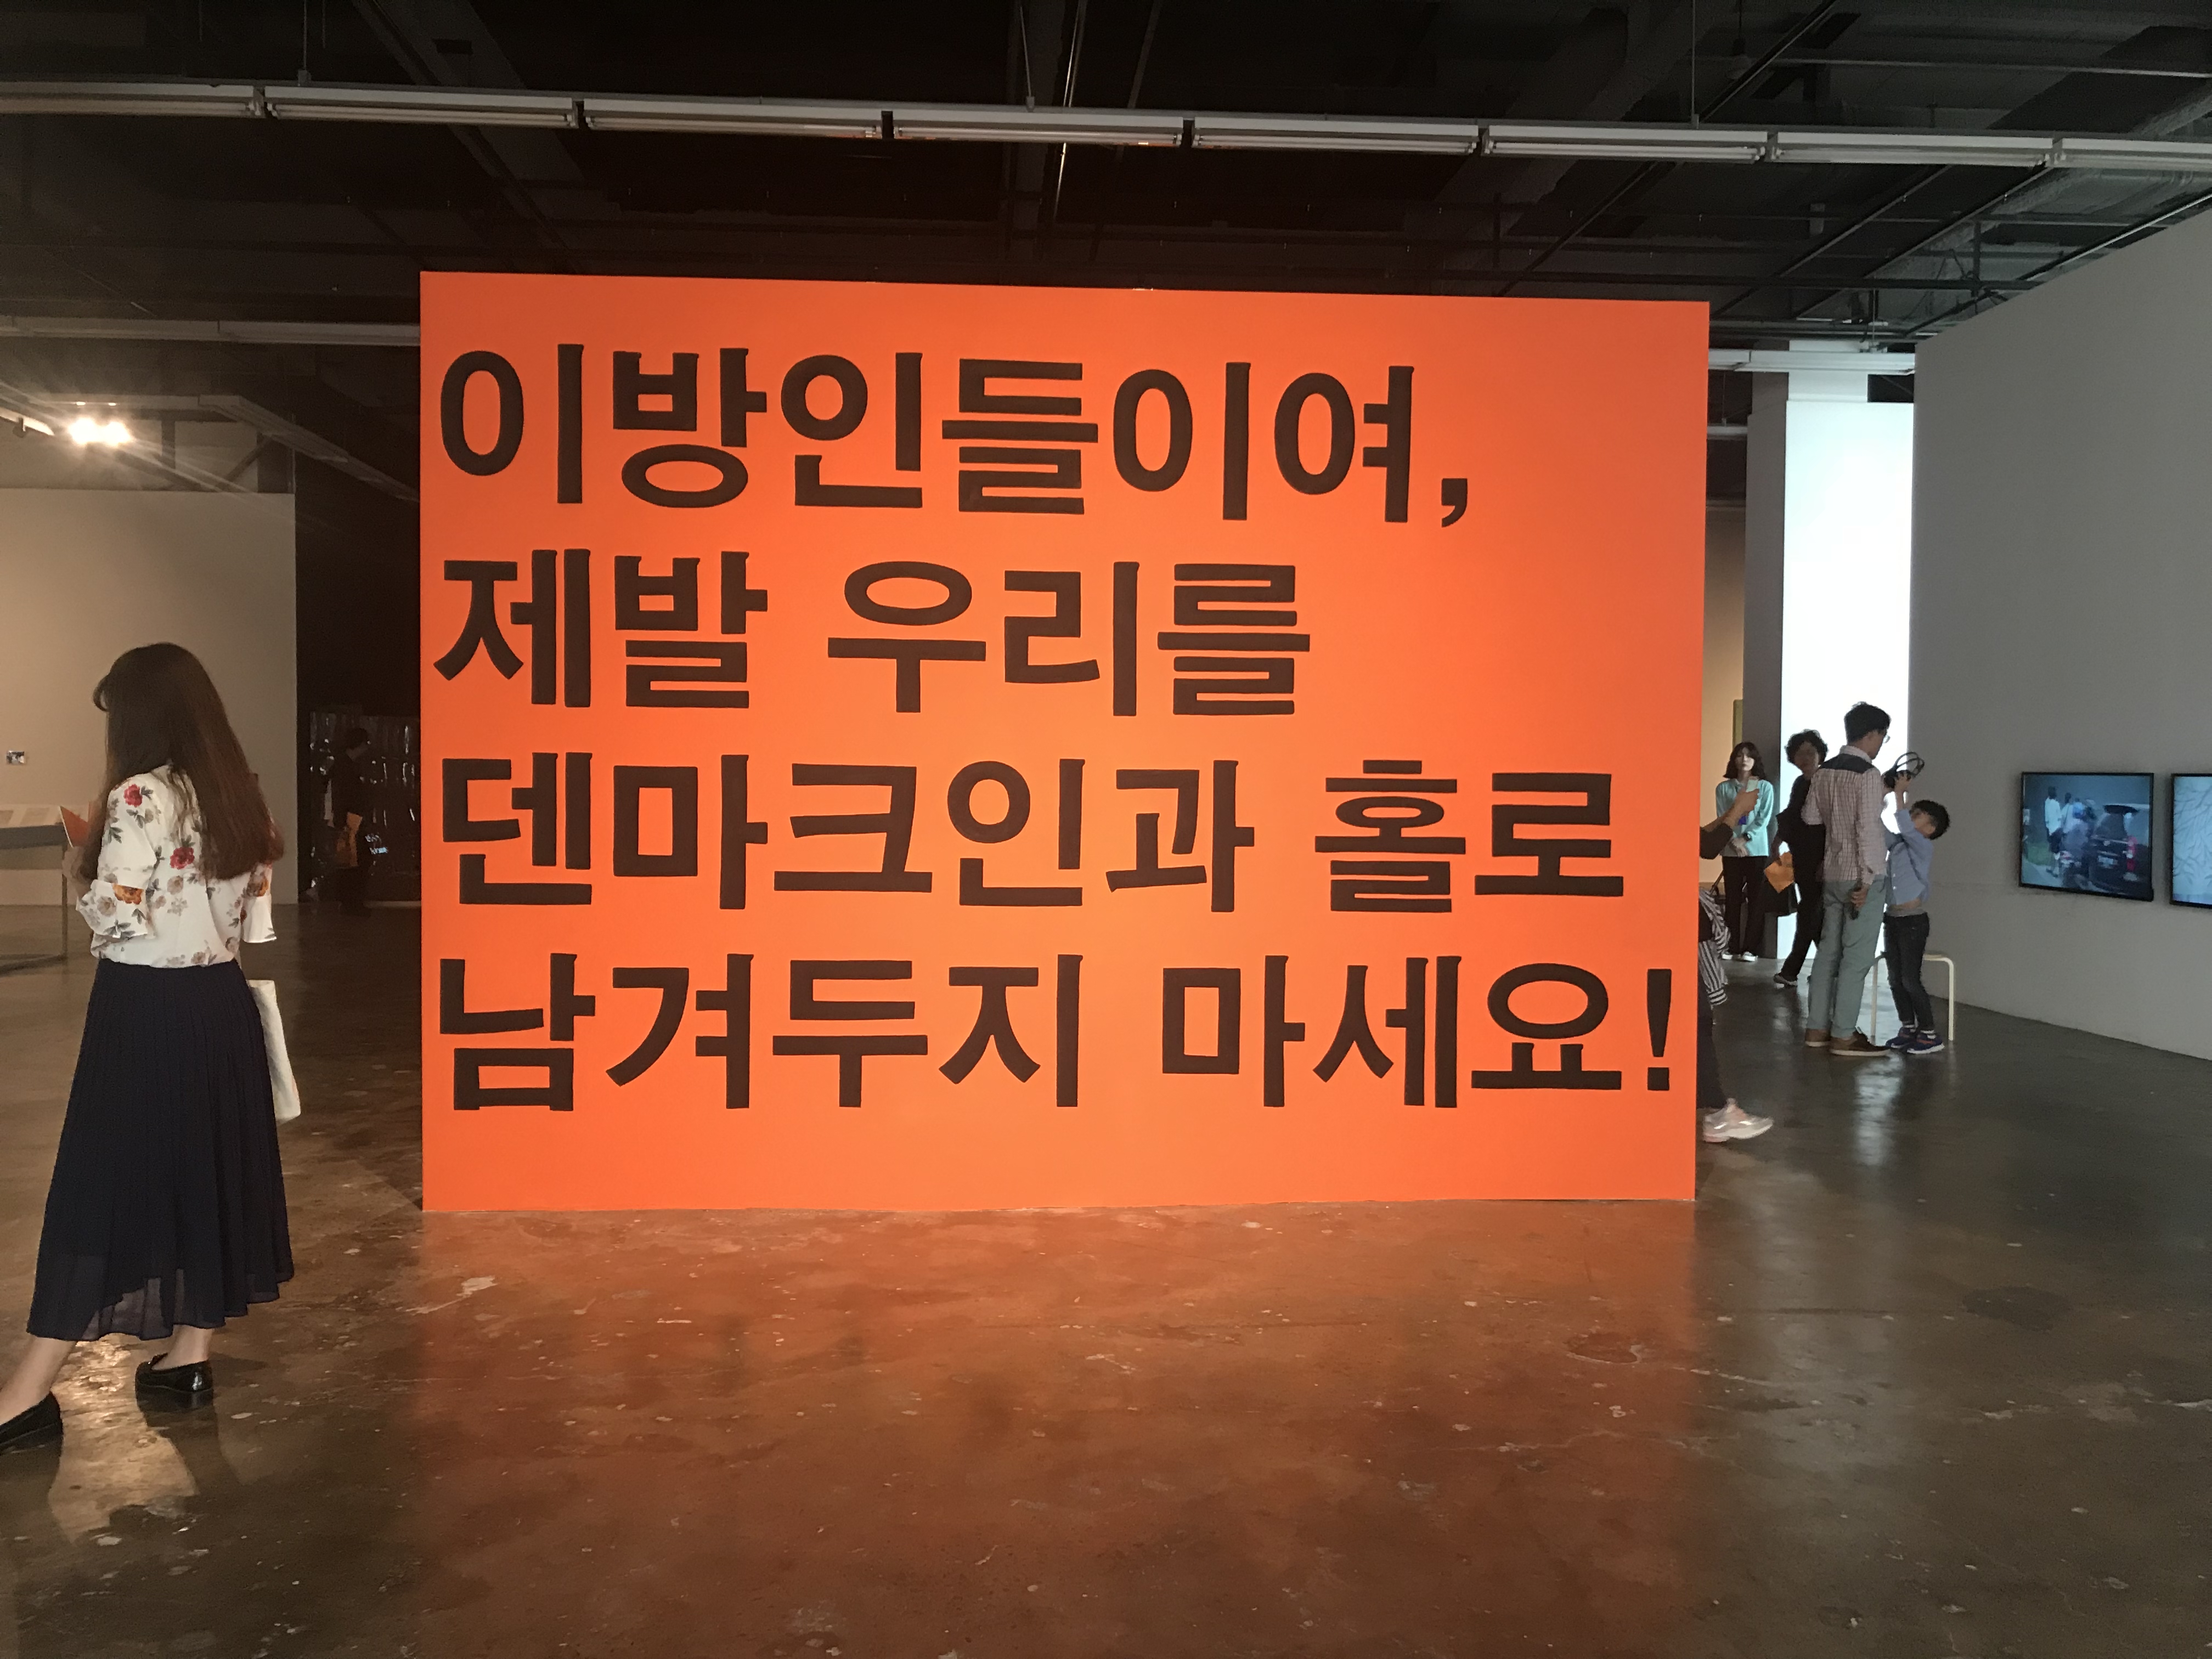 Gwangju Biennale 2018: Imagine Borders